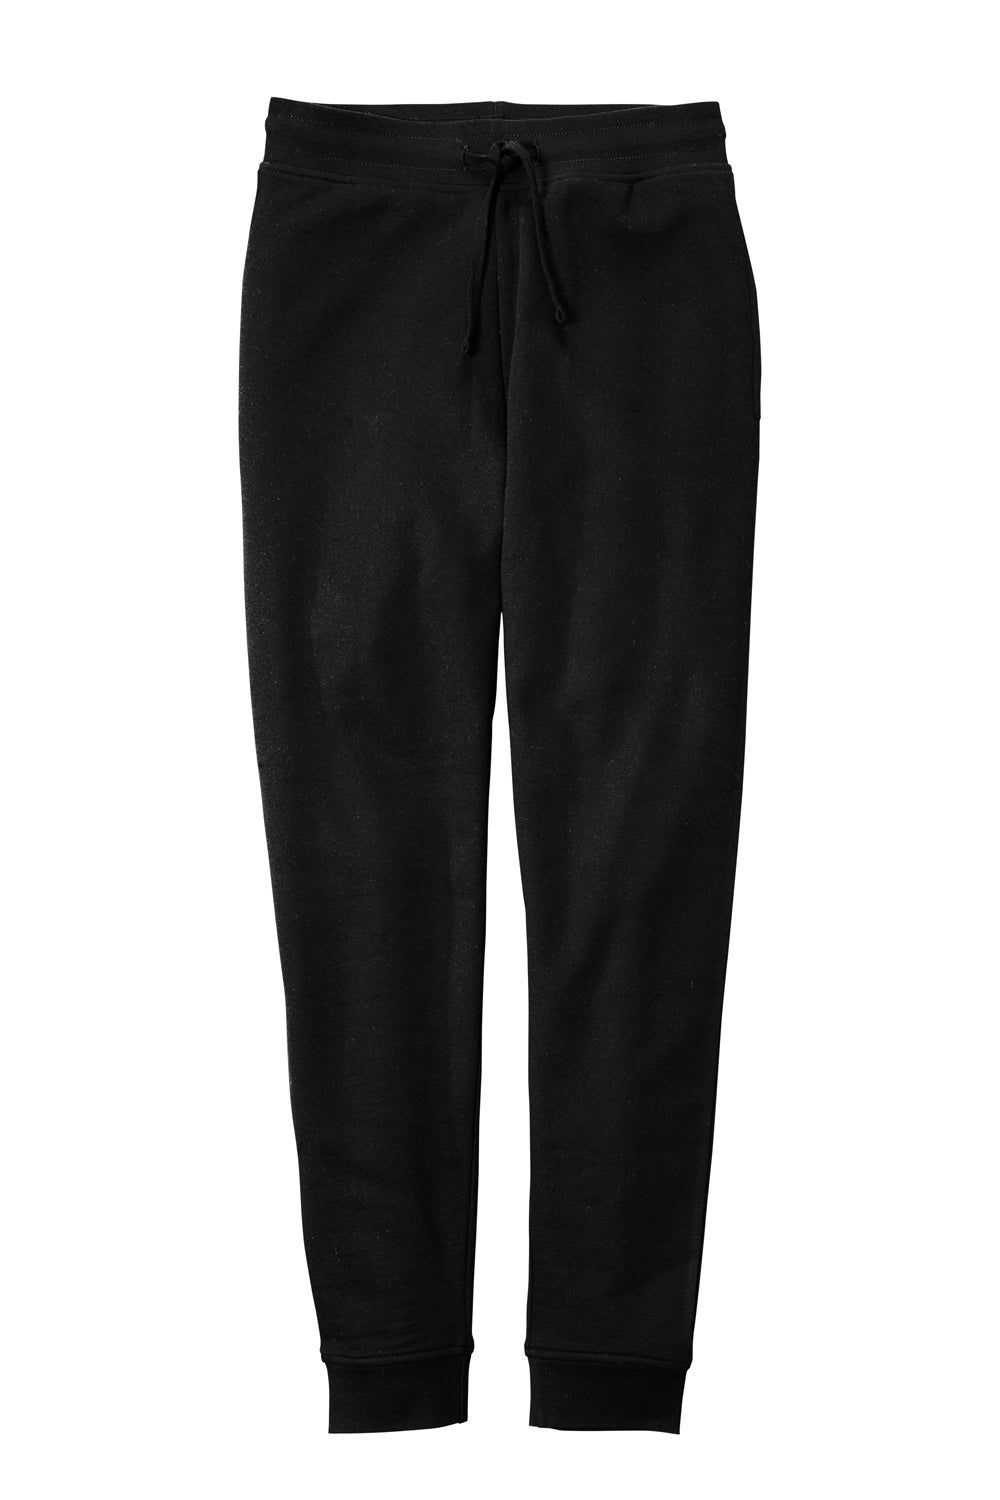 District DT6107 V.I.T. Fleece Jogger Sweatpants w/ Pockets Black Flat Front